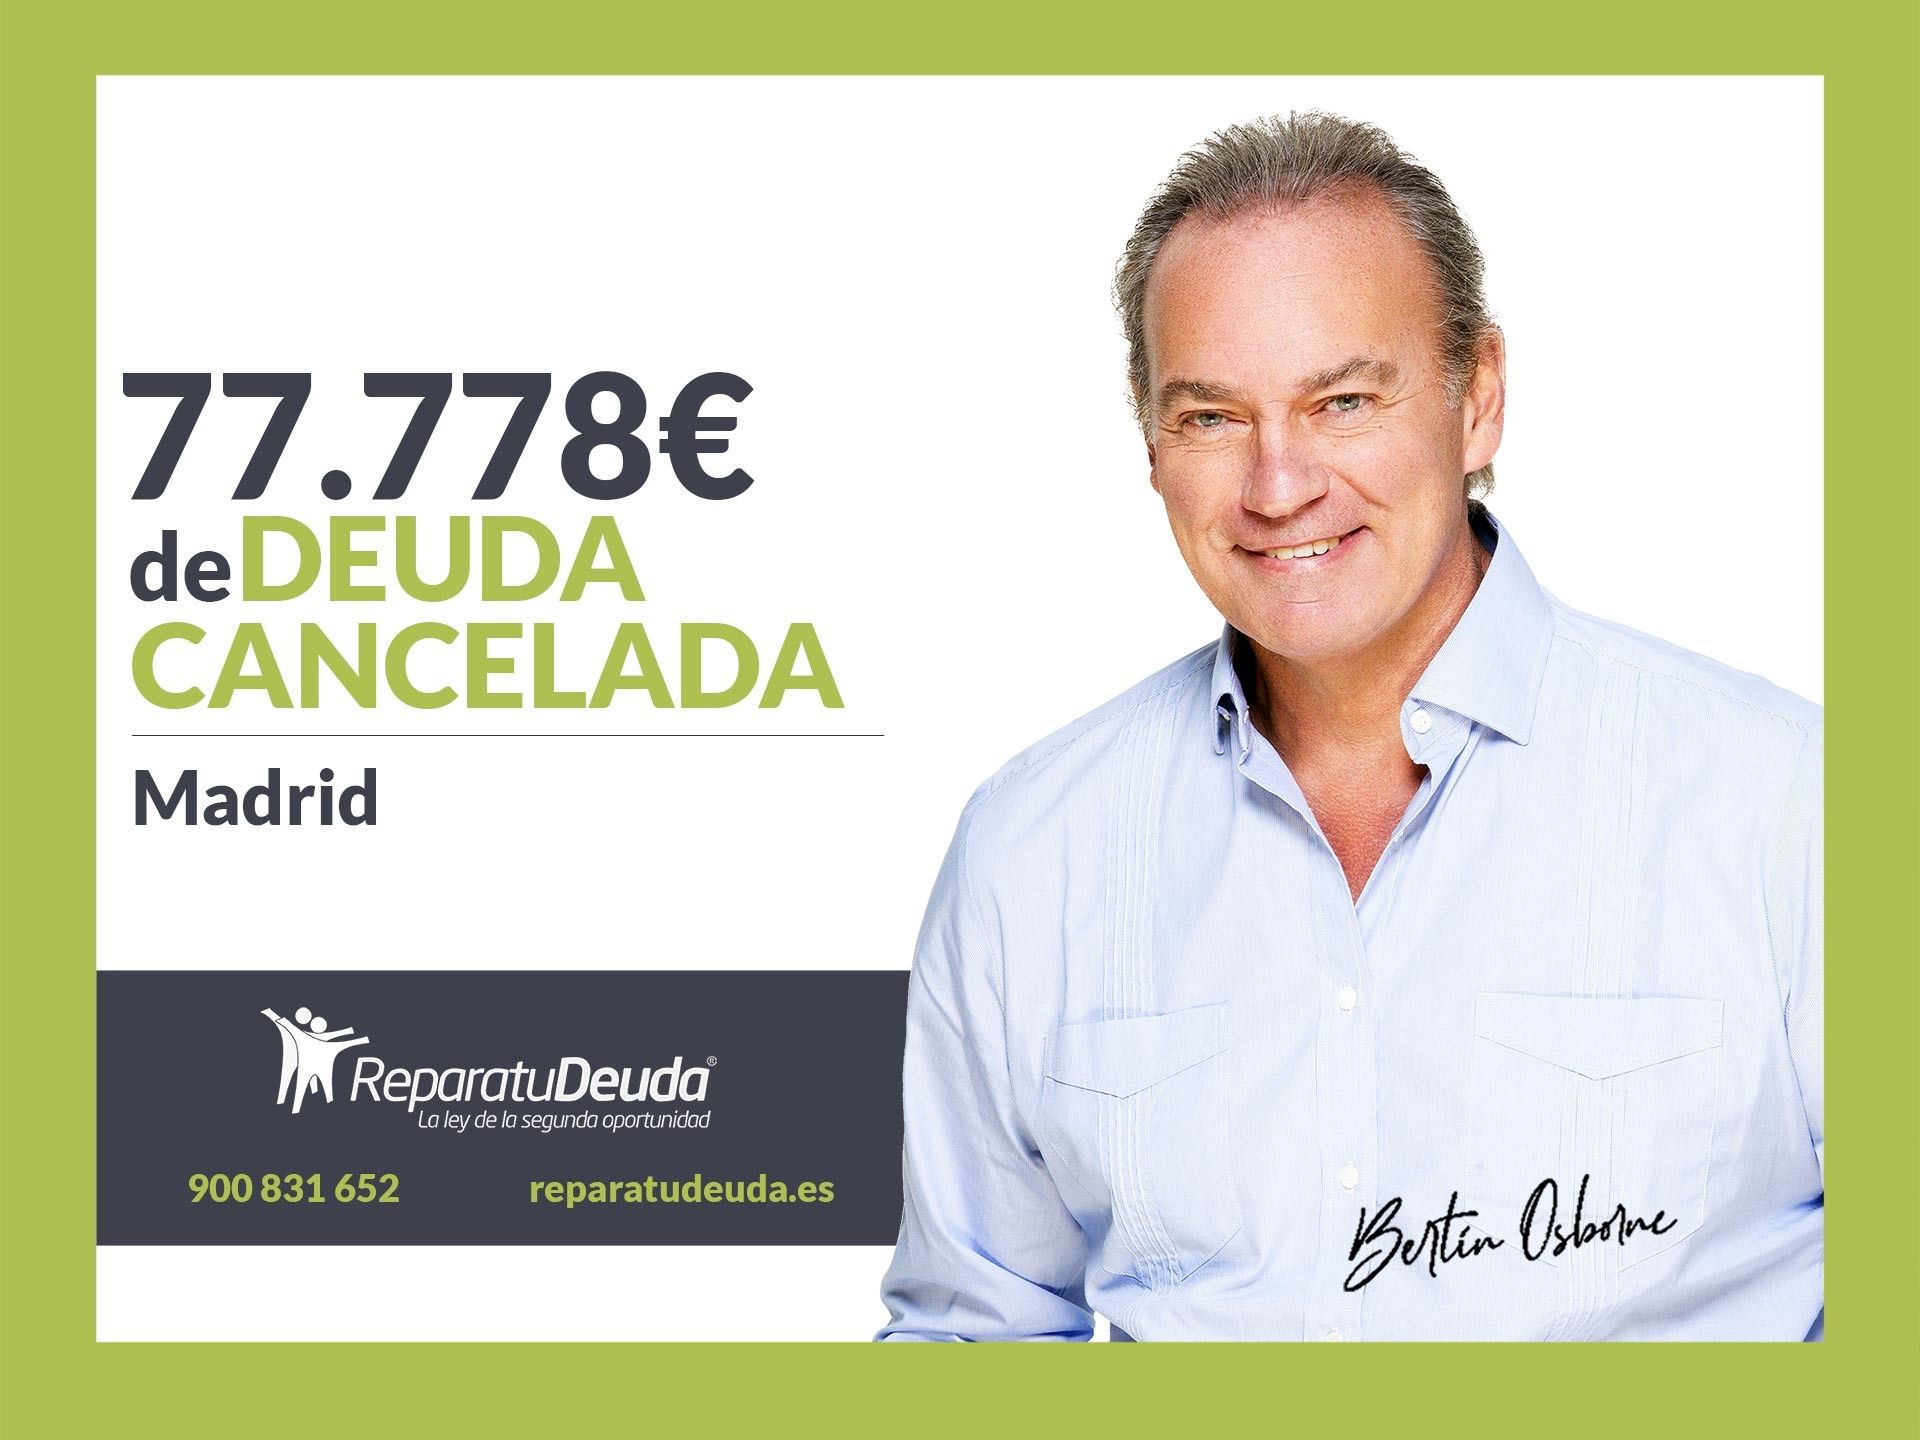 Repara tu Deuda Abogados cancela 77.778? en Madrid con la Ley de Segunda Oportunidad